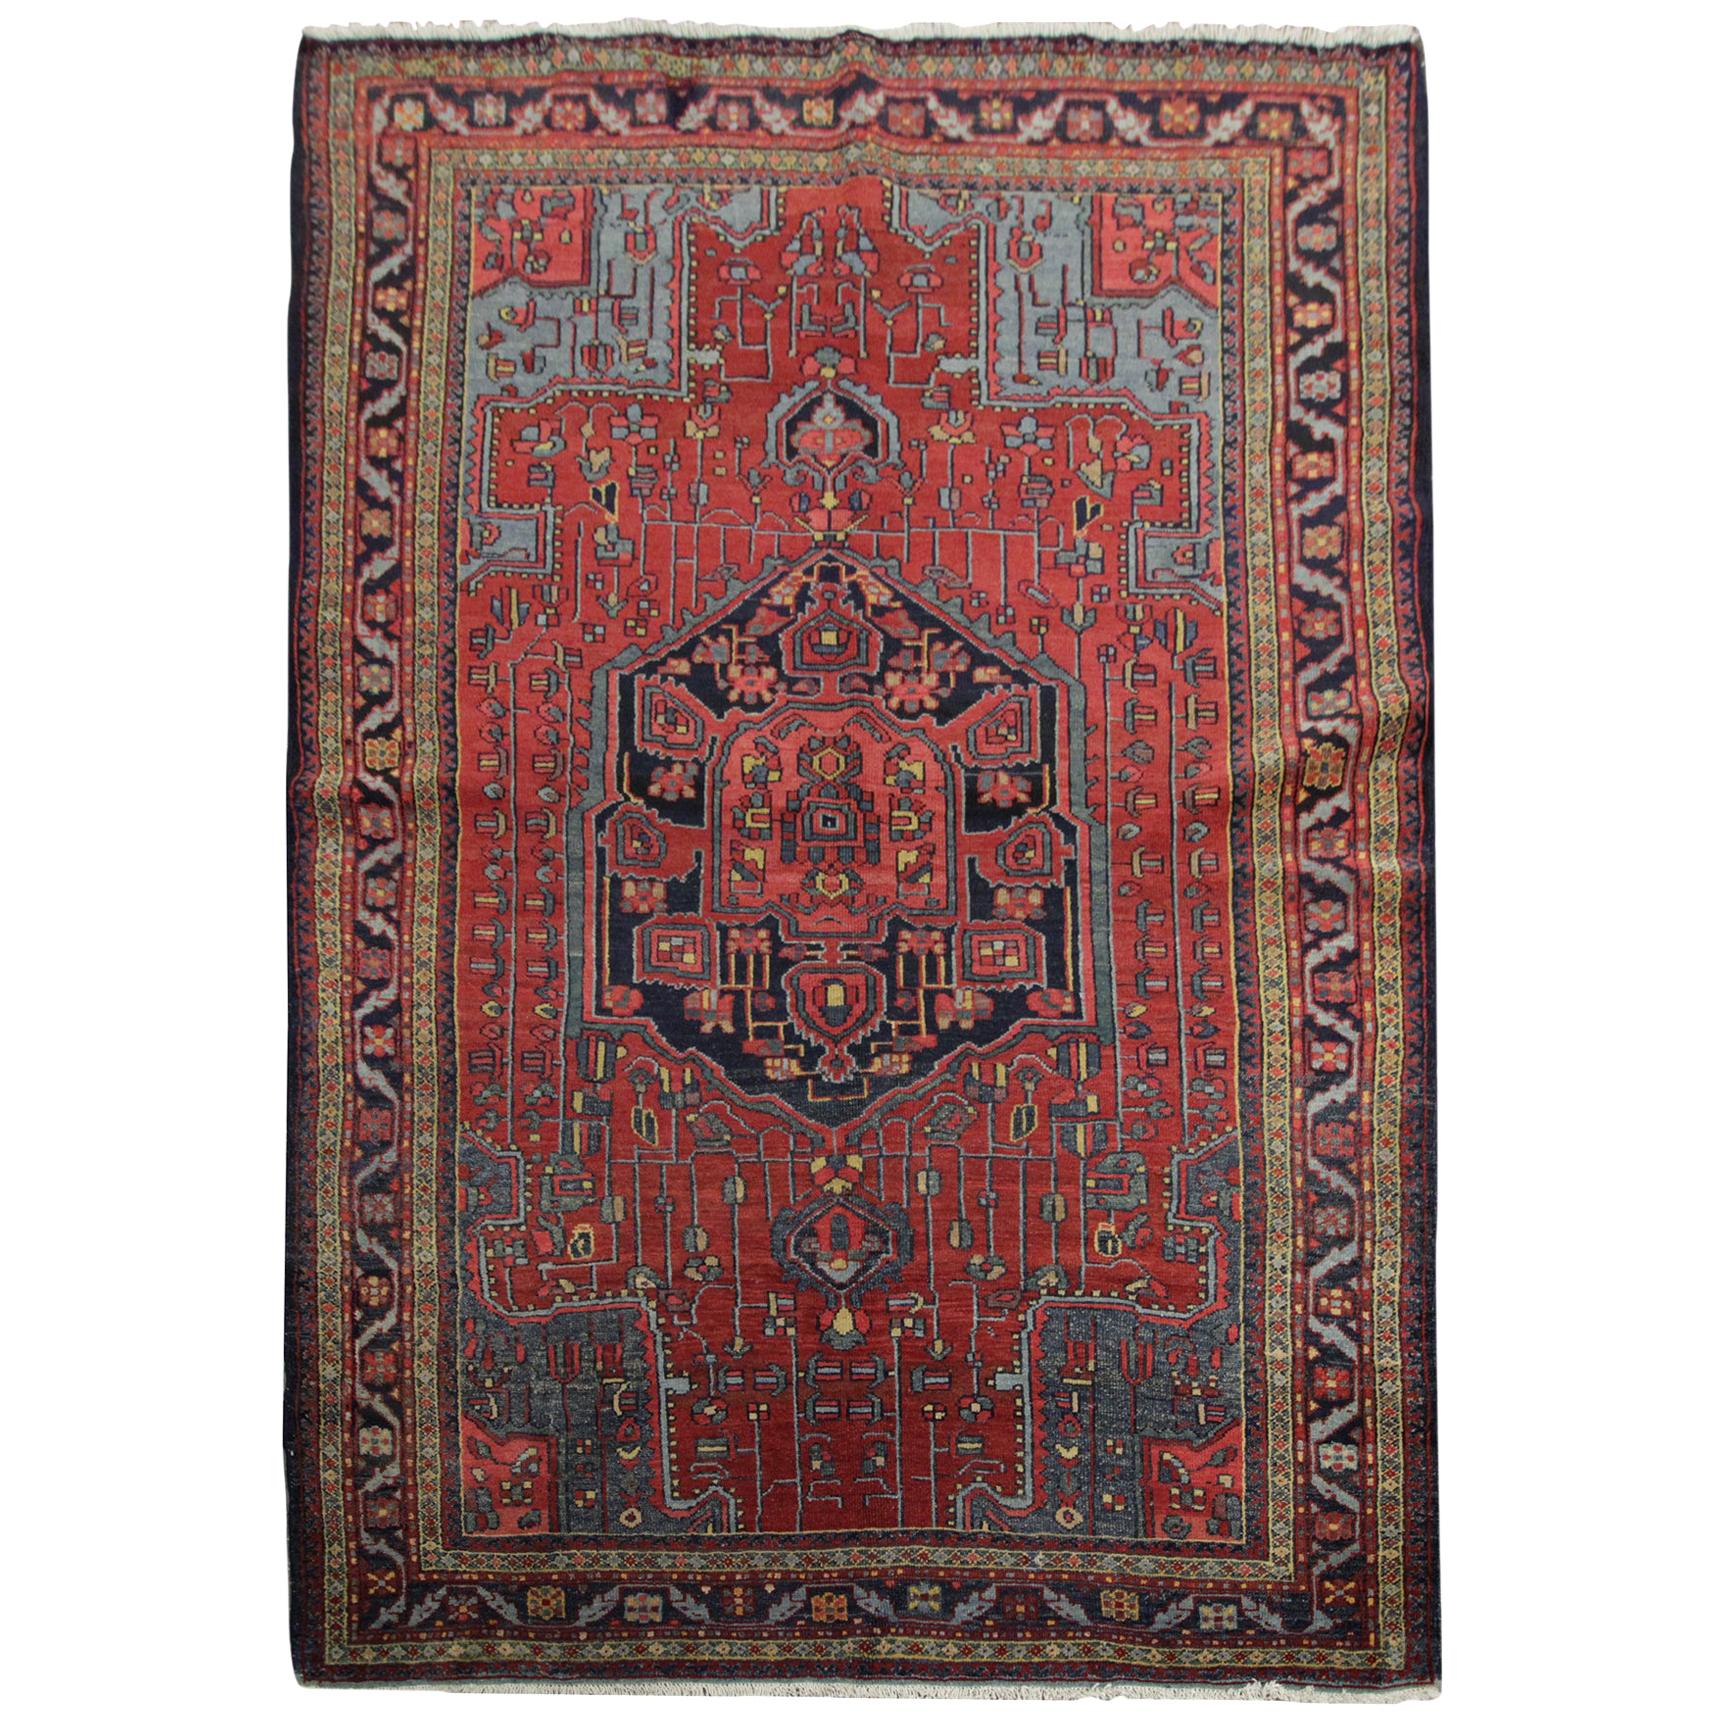 Tapis ancien du Caucase, tapis de salon du pays, tapis oriental rouge tribal fait main 